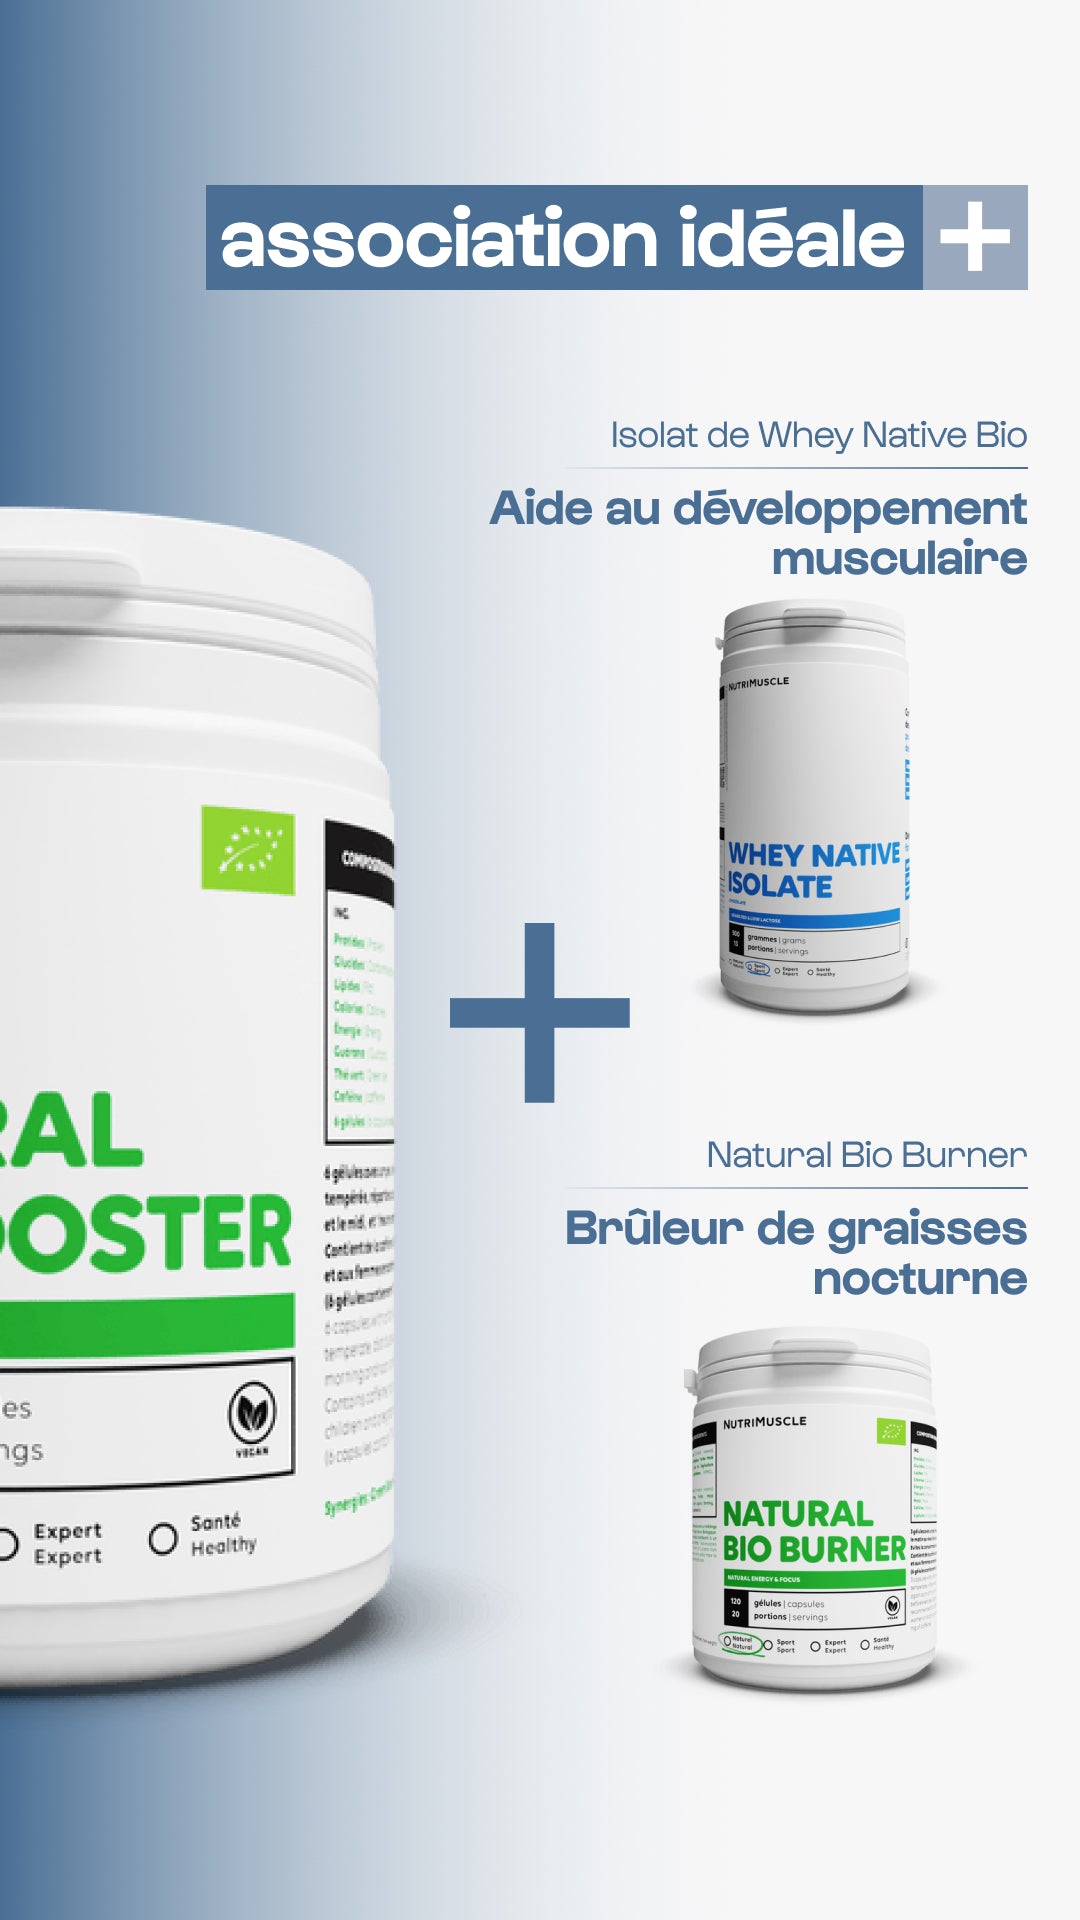 Bioboster natural